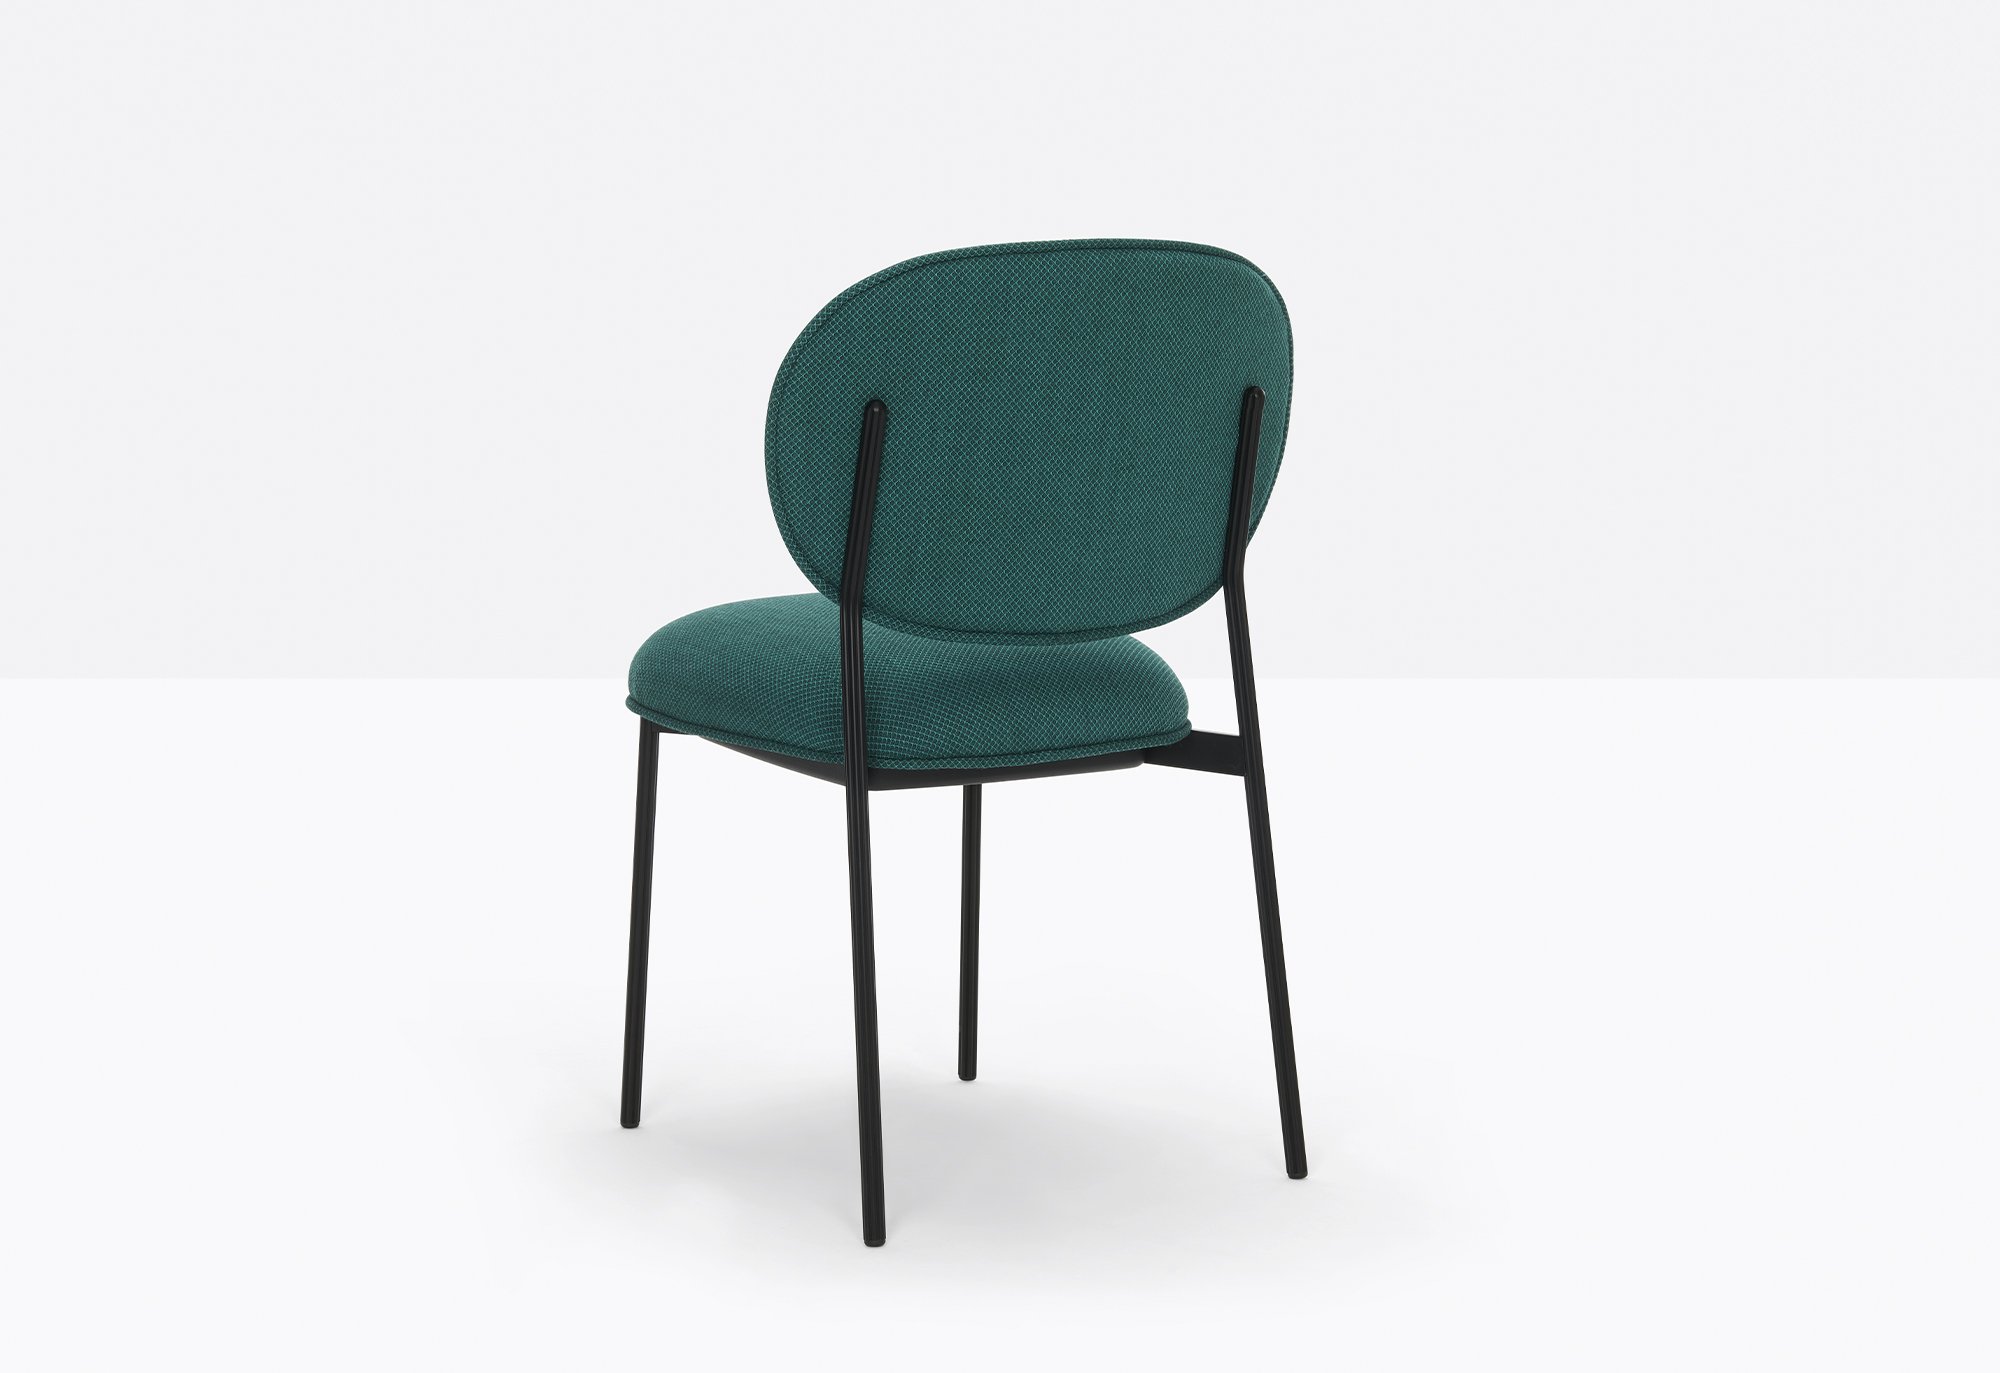 Blume Chair from Pedrali, designed by Sebastian Herkner